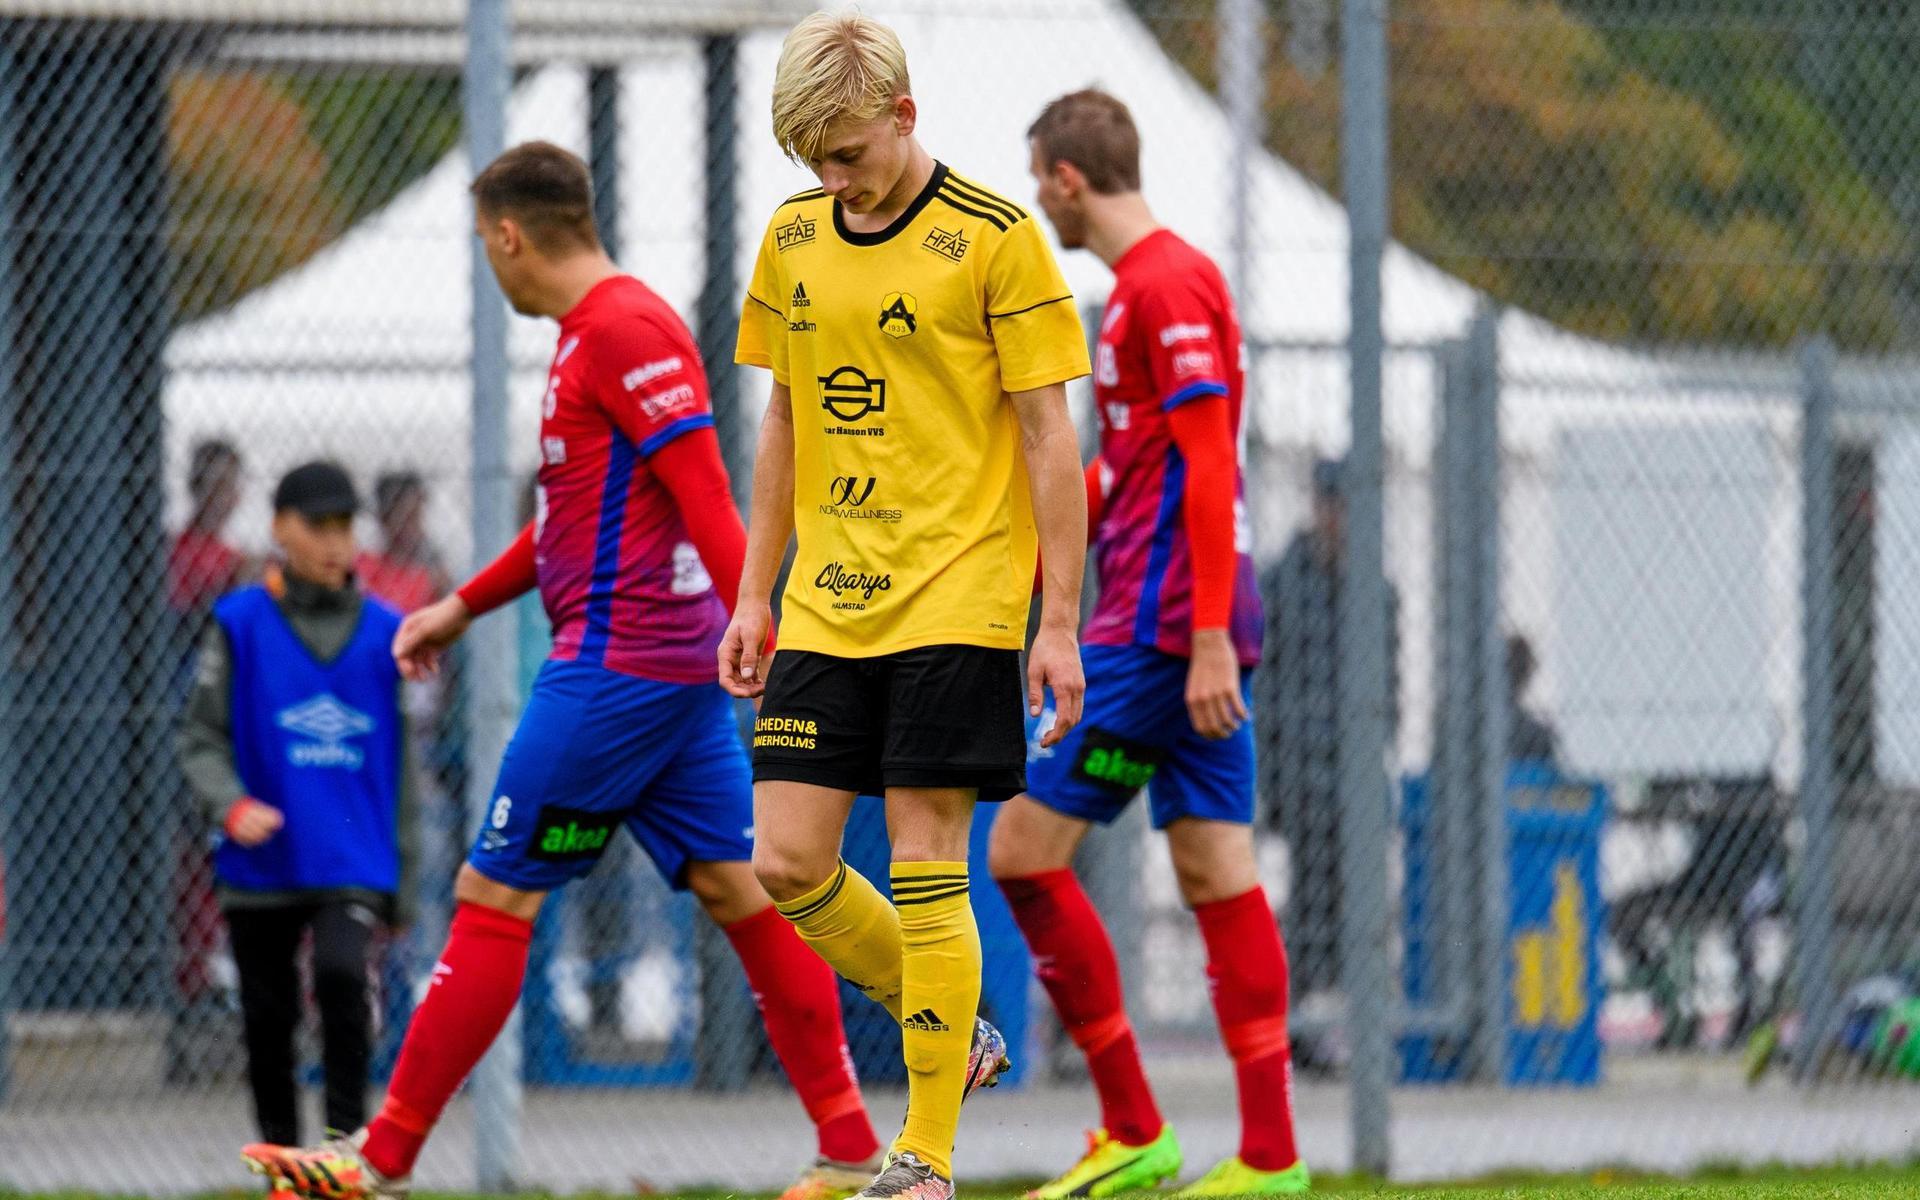 Leo Hedenberg deppar efter att Astrio förlorat seriefinalen mot Höganäs och istället måste kvala för att kunna ta klivet upp i division 2-fotbollen.